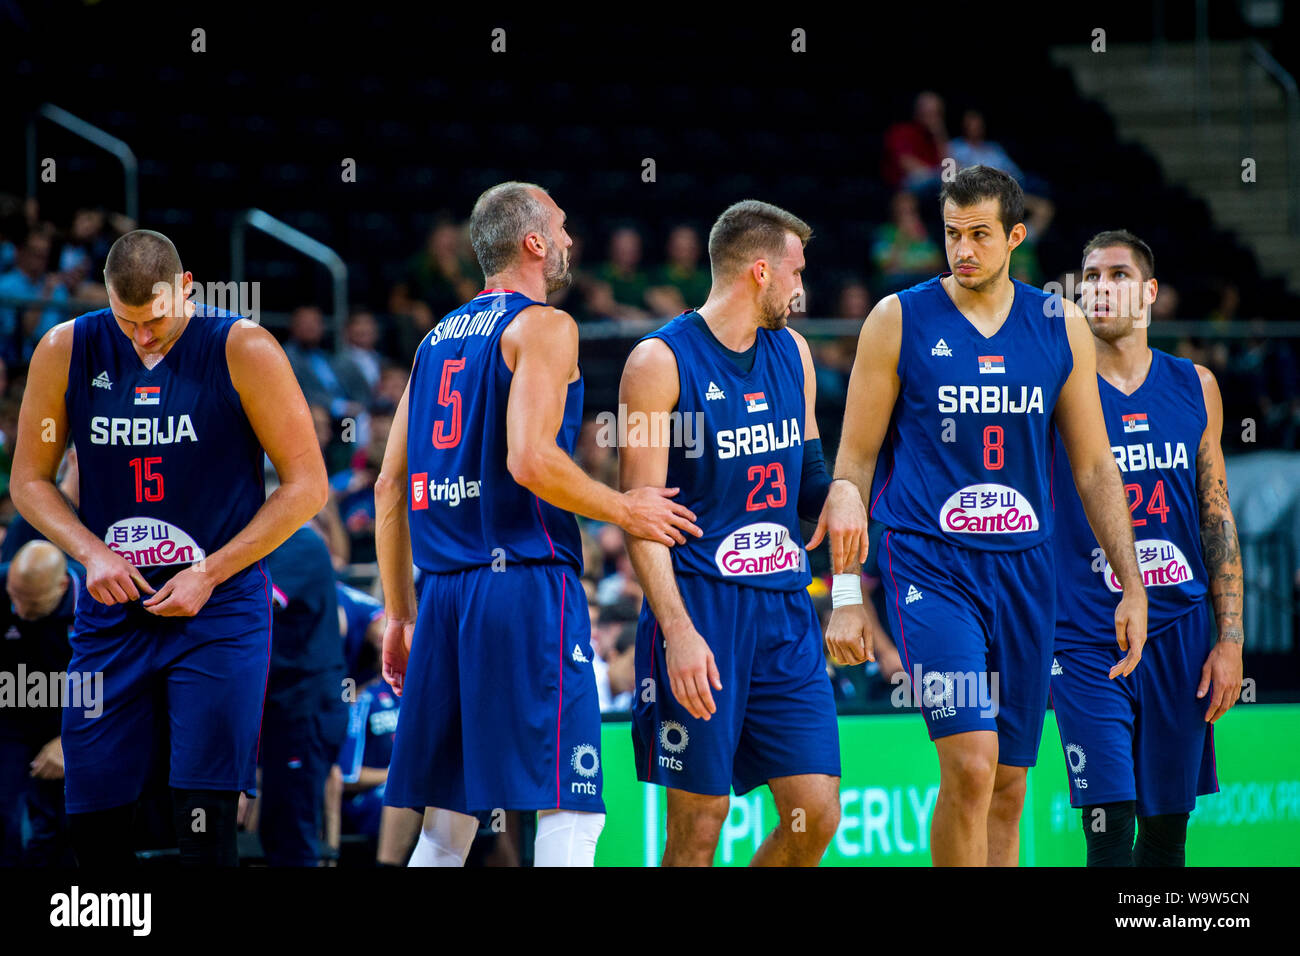 Serbia Basketball Stockfotos und -bilder Kaufen - Alamy